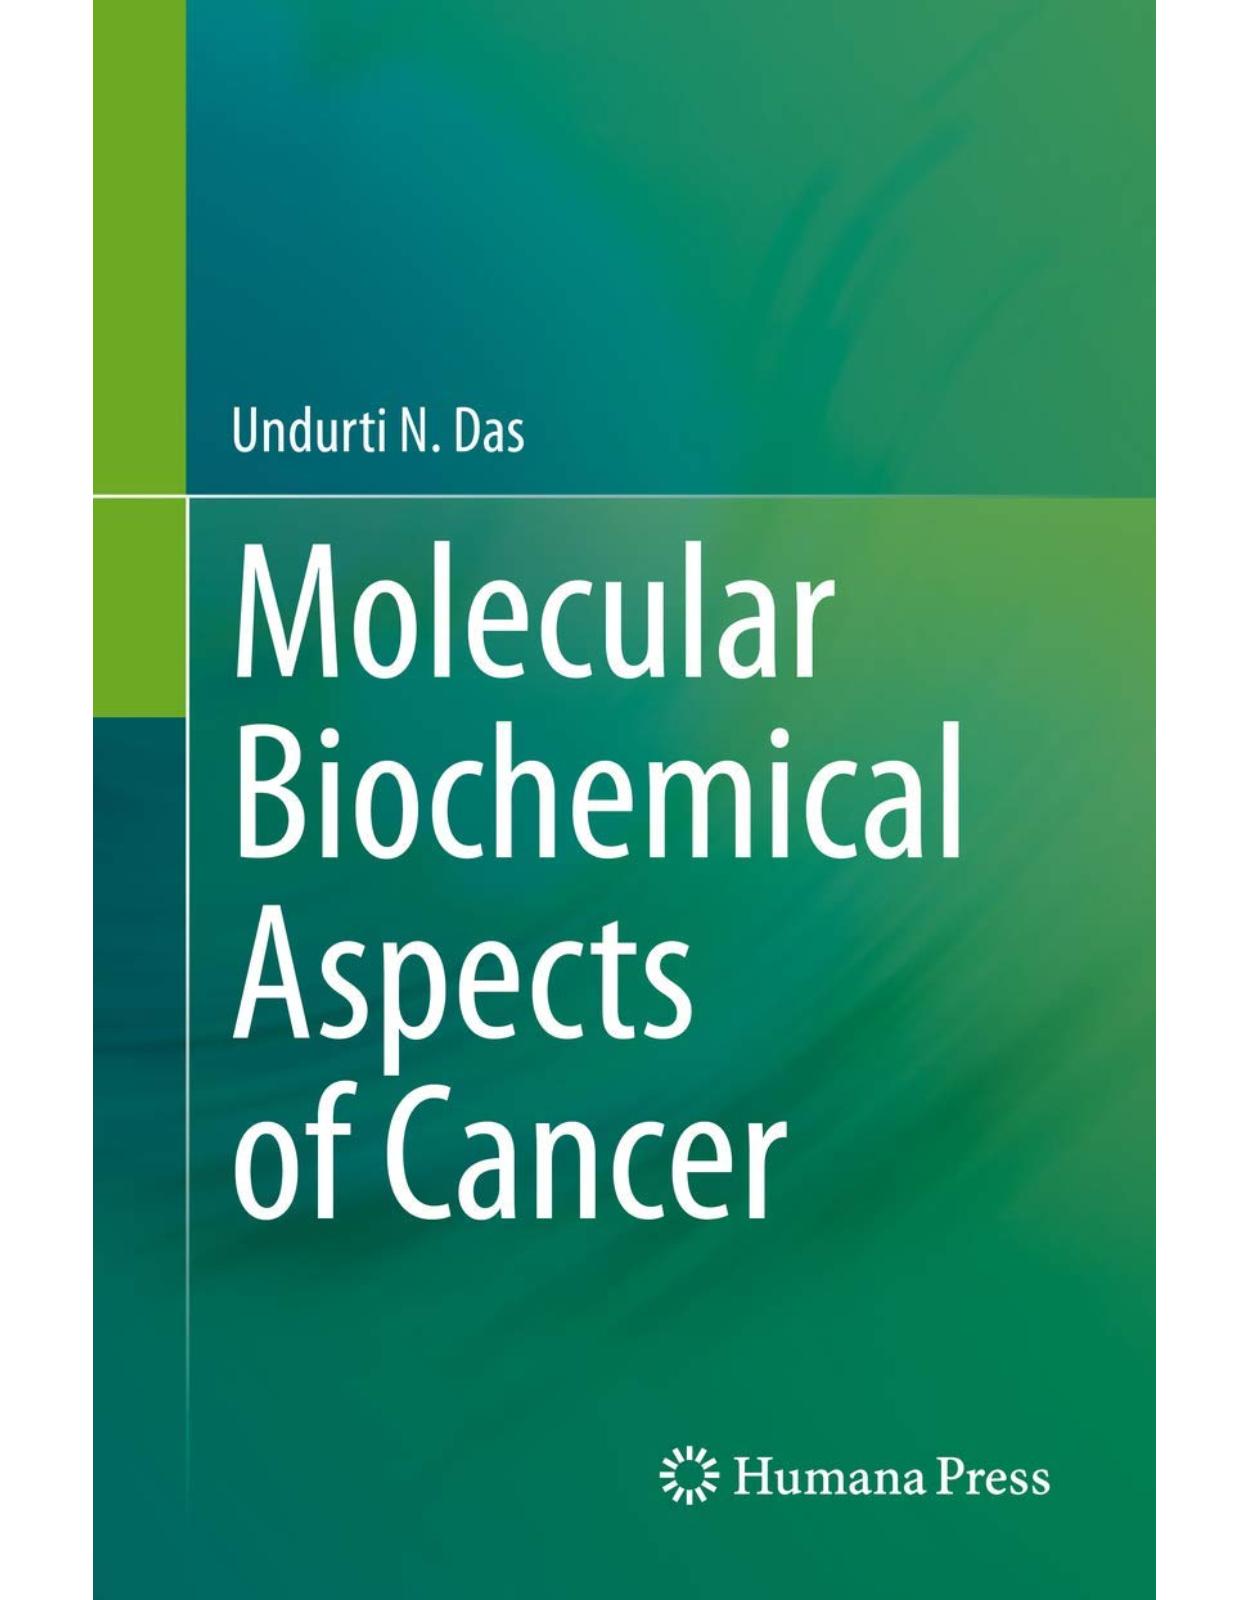 Molecular Biochemical Aspects of Cancer